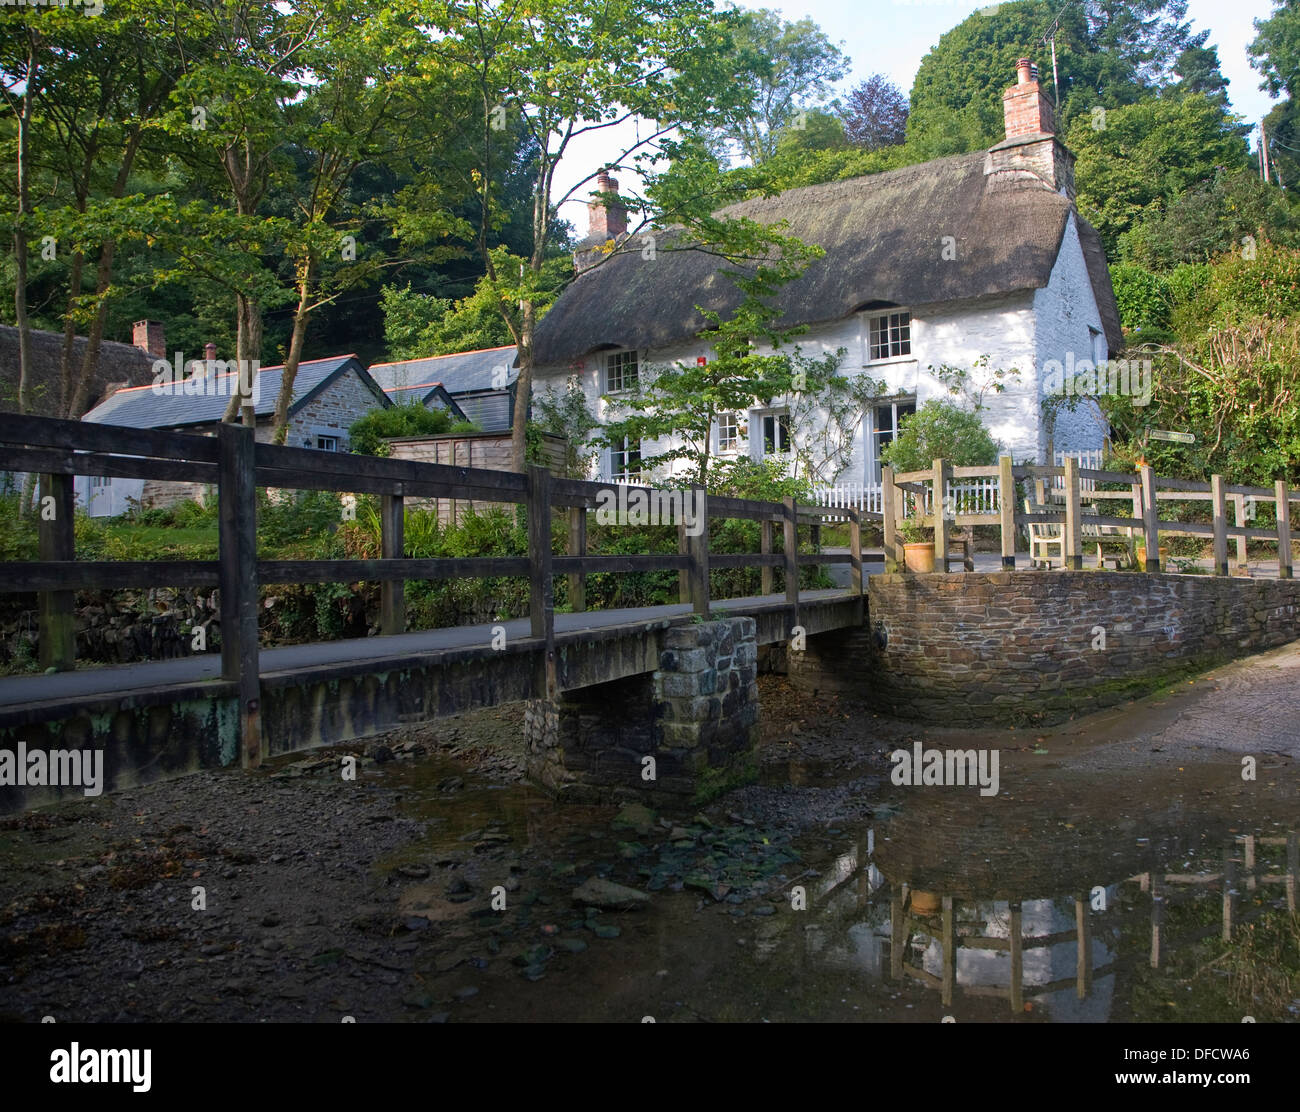 Jolie chaumière traditionnelle dans le village de lits jumeaux, Cornwall, England, UK Banque D'Images